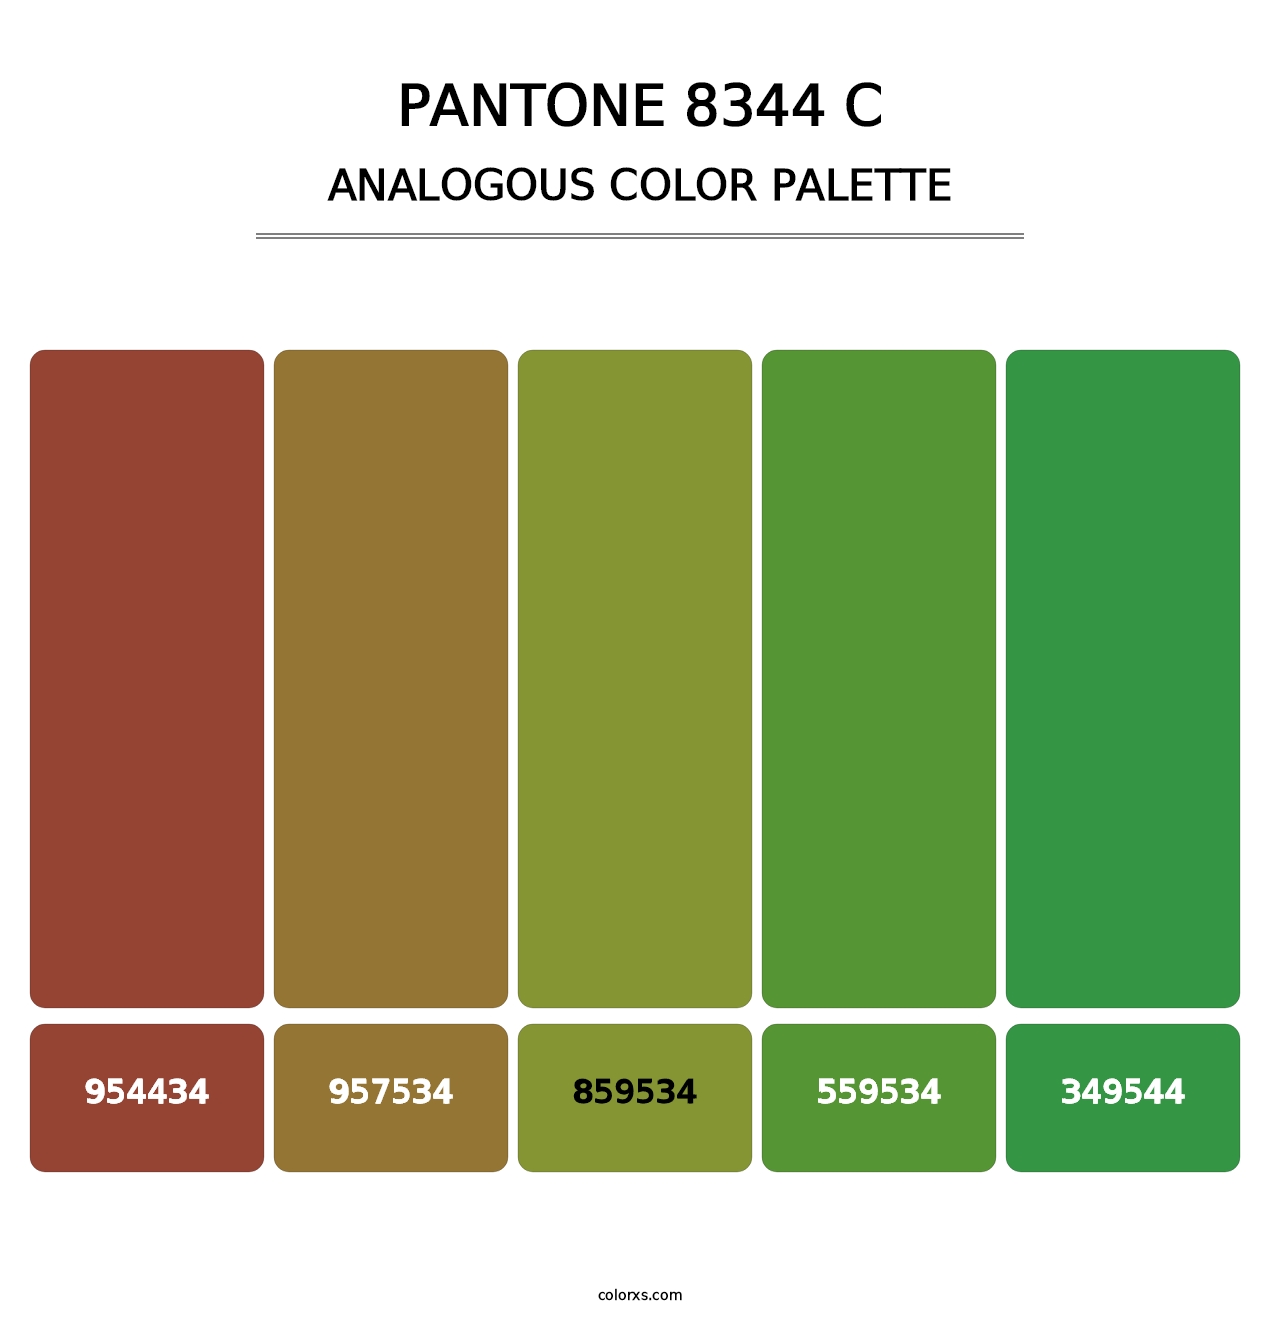 PANTONE 8344 C - Analogous Color Palette